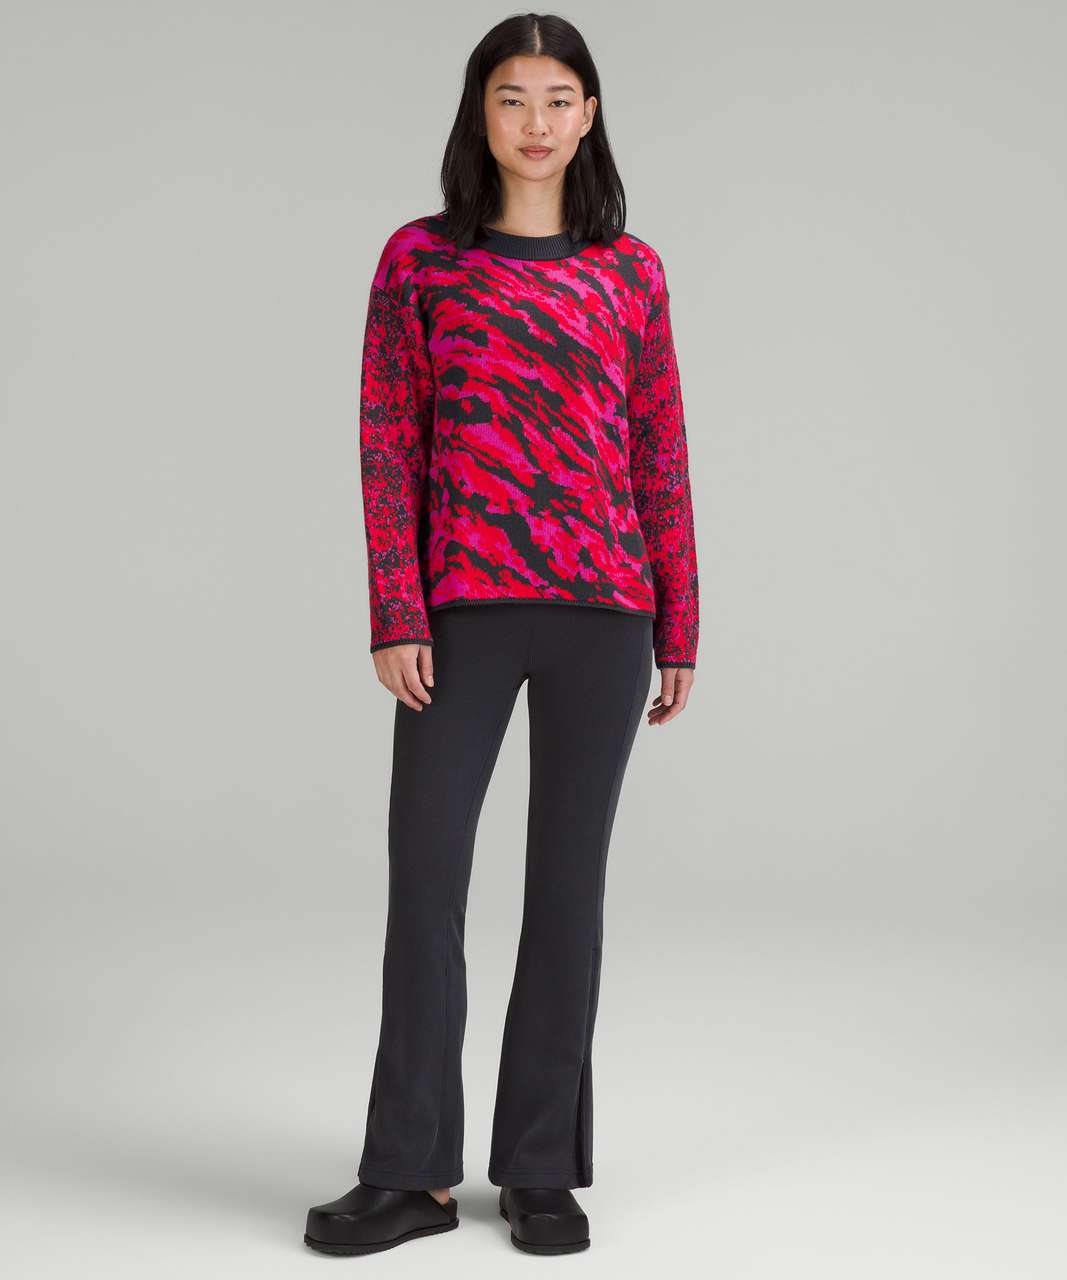 Lululemon Wool-Blend Patterned Sweater - Lulu Red / Paris Perfection / Black Granite